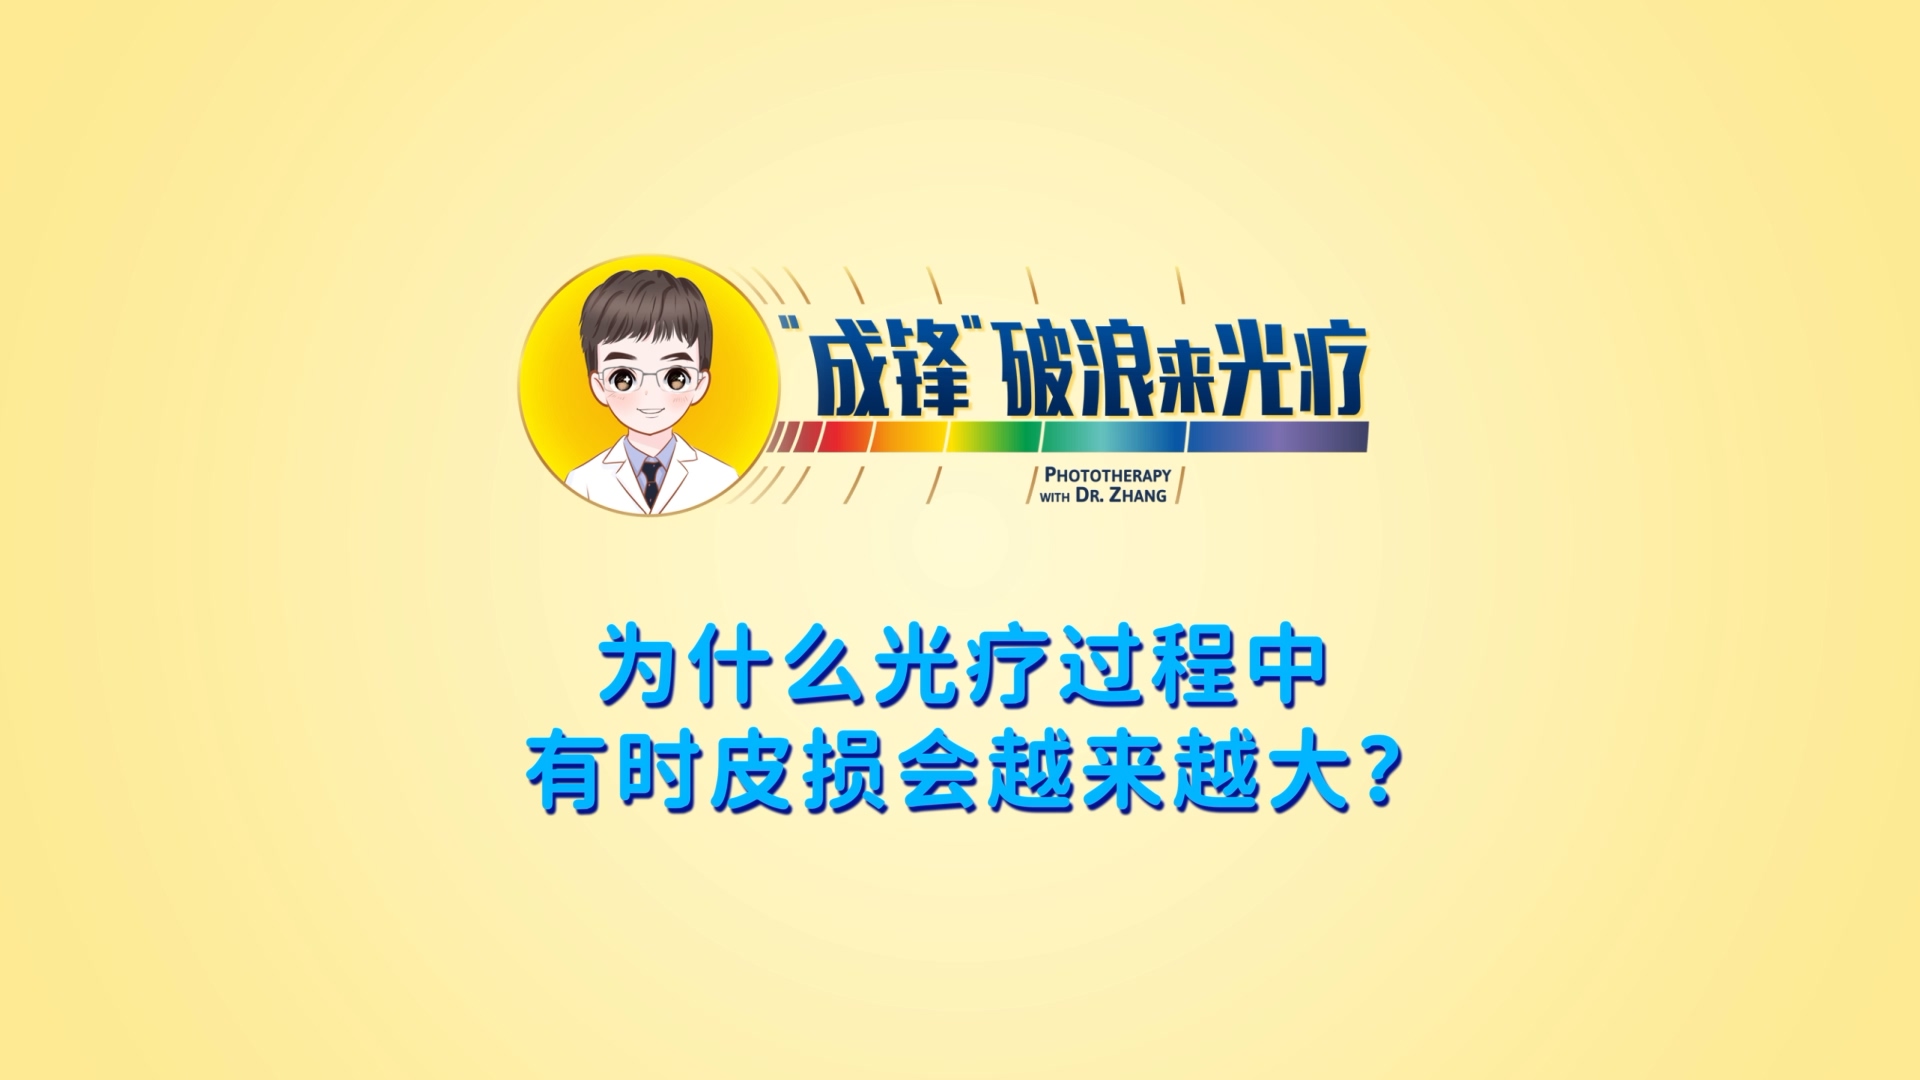 张成锋医生：為(wèi)什么光疗过程中有(yǒu)时皮损会越来越大？